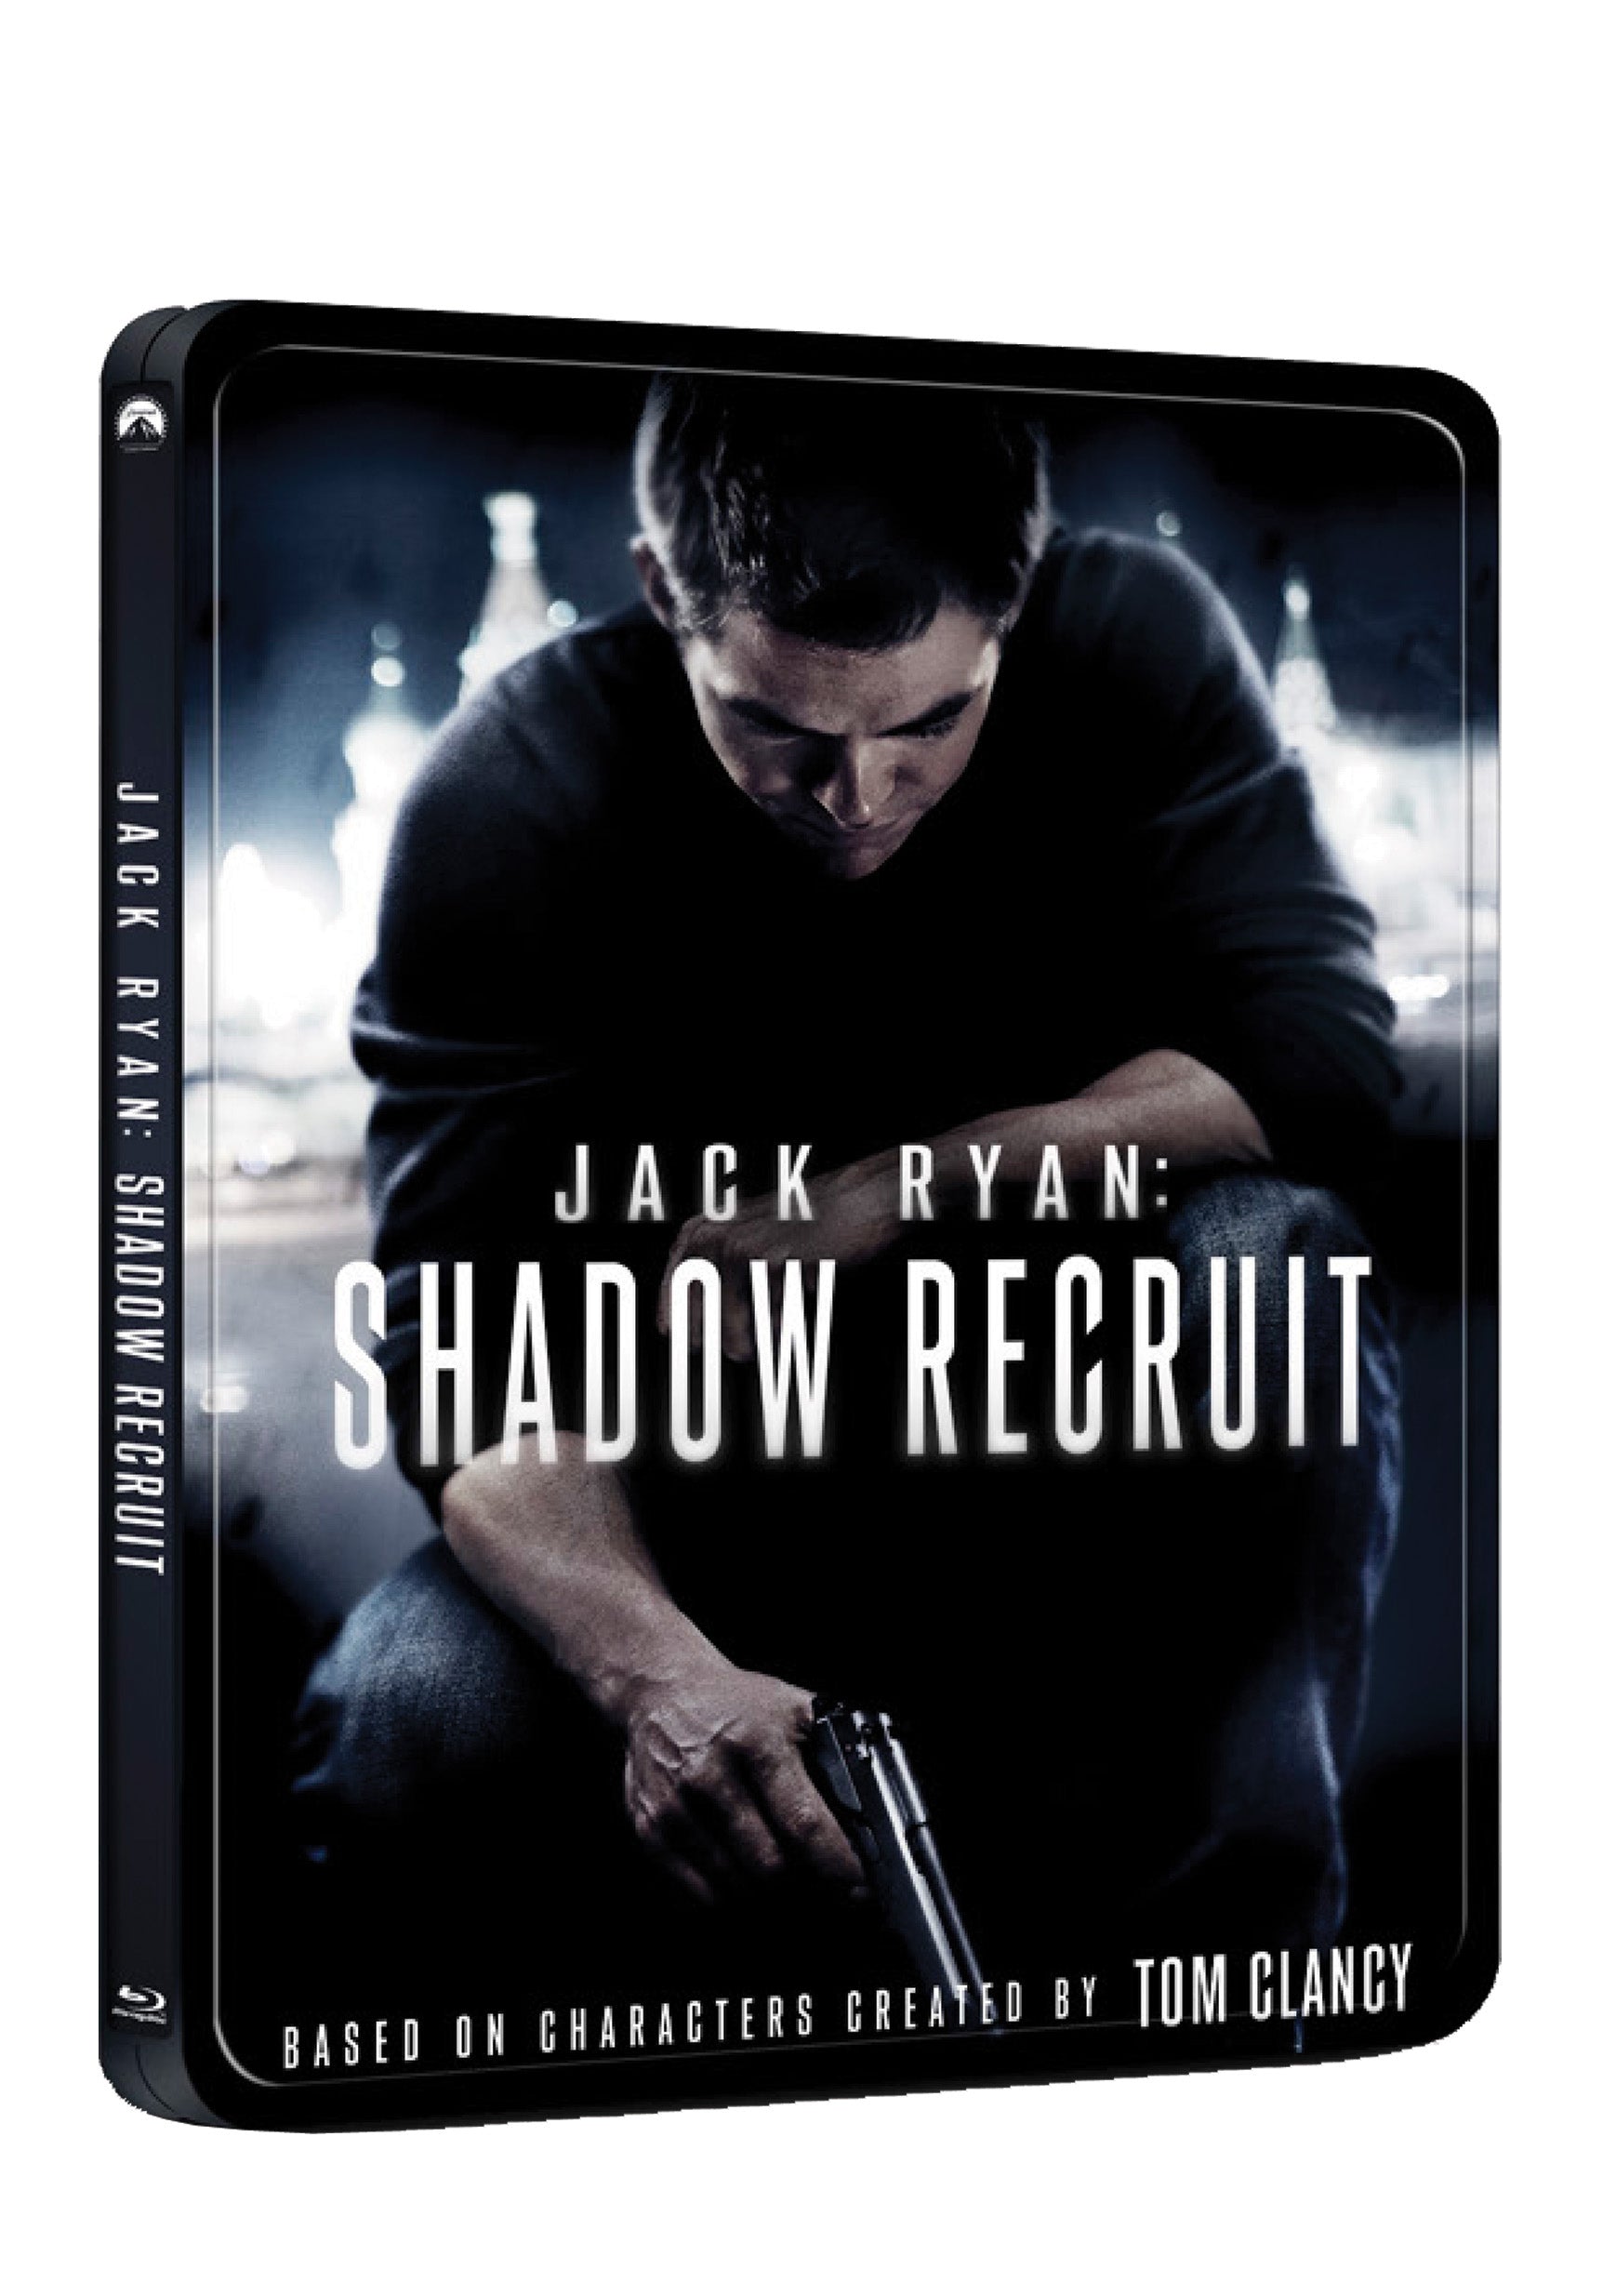 Jack Ryan: V utajeni BD - steelbook / Jack Ryan: Shadow Recruit - Czech version